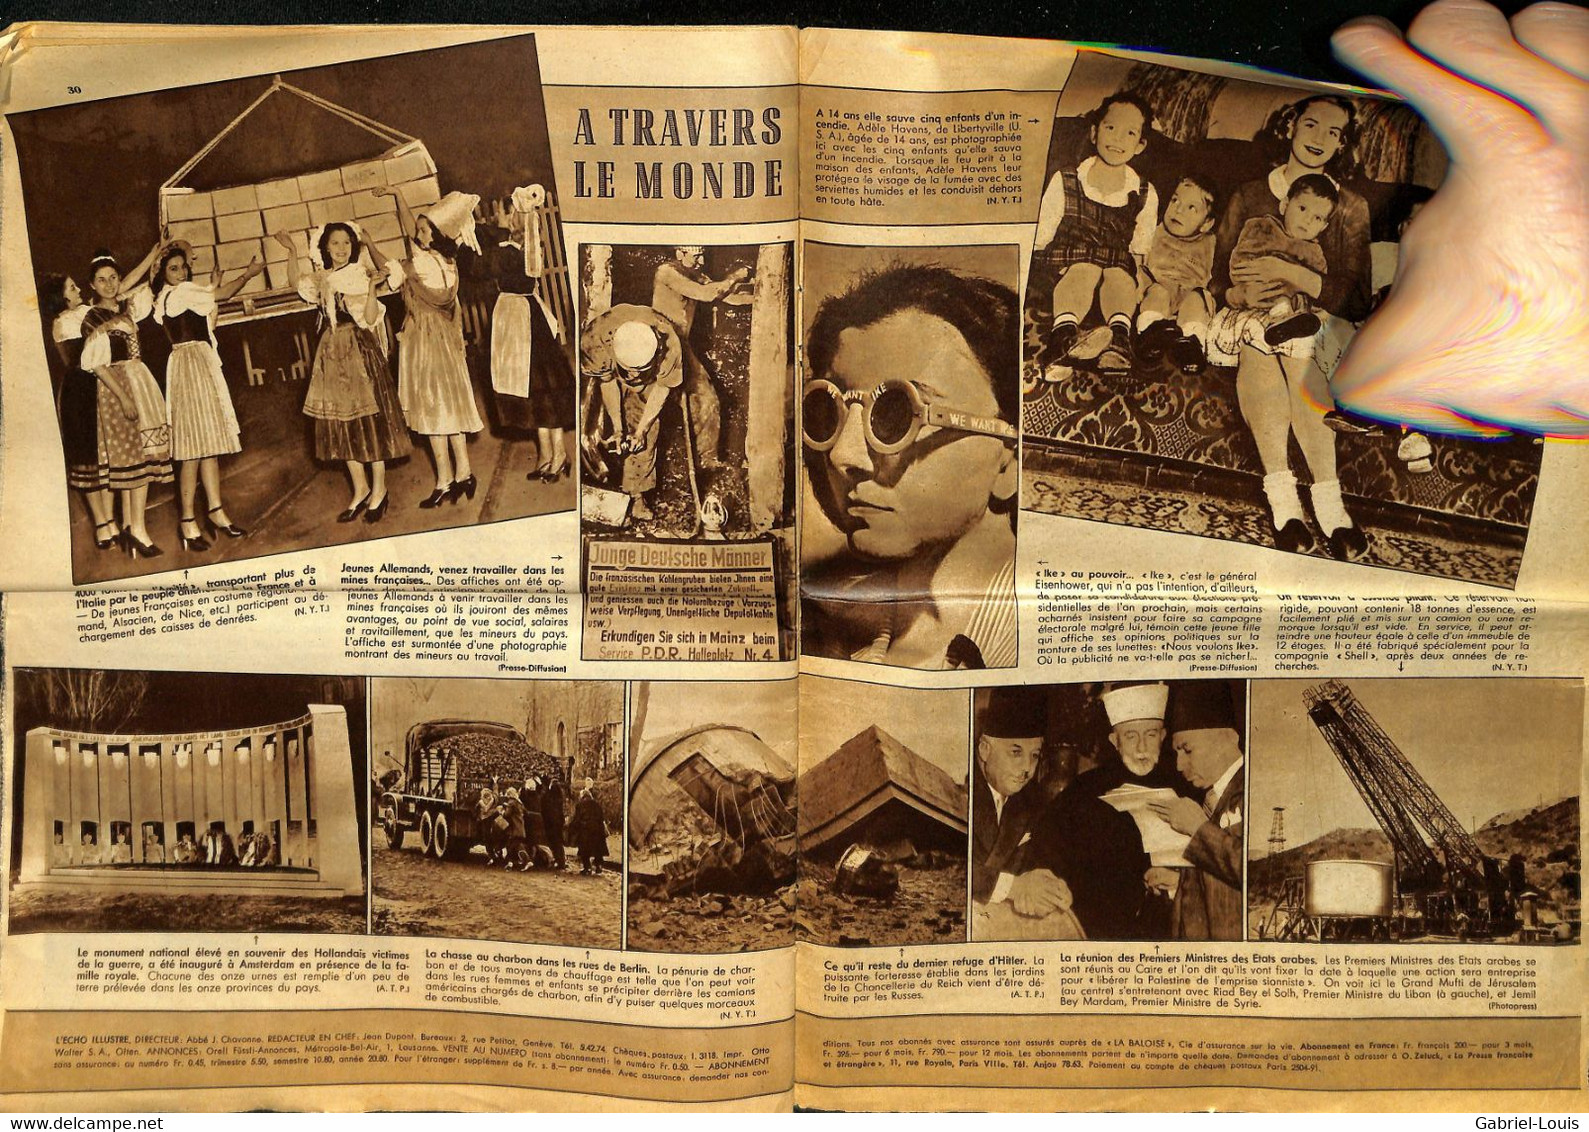 L'Echo Illustré 1947 52 Paix et justice sociale/Fête foraine Genève/Ferronnerie d'art Ferronnier /Valais/Publicités